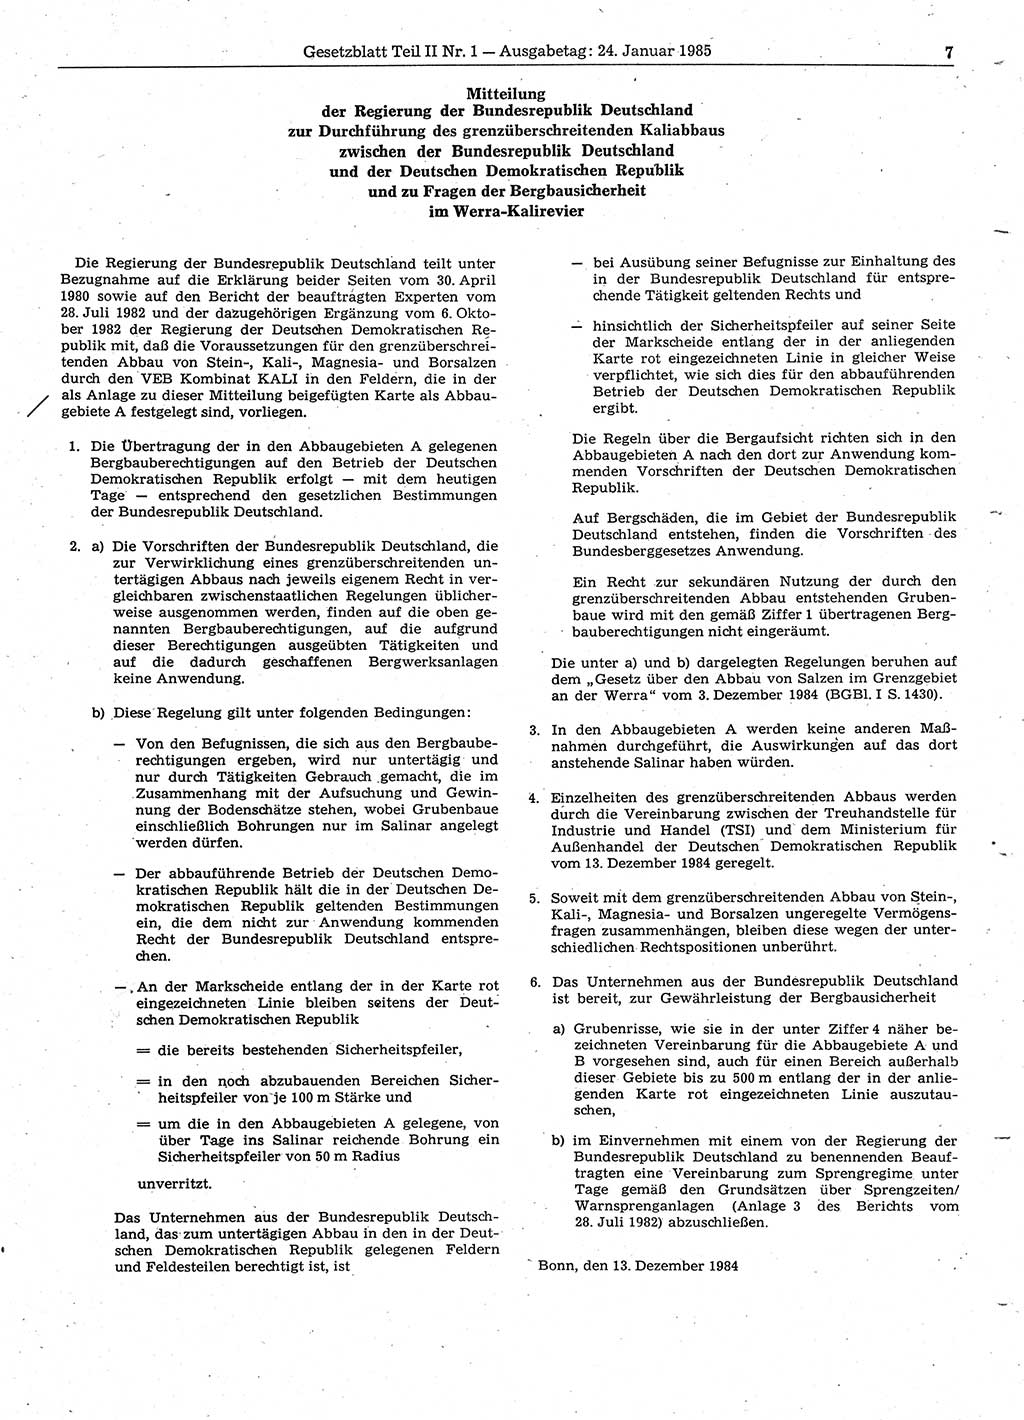 Gesetzblatt (GBl.) der Deutschen Demokratischen Republik (DDR) Teil ⅠⅠ 1985, Seite 7 (GBl. DDR ⅠⅠ 1985, S. 7)